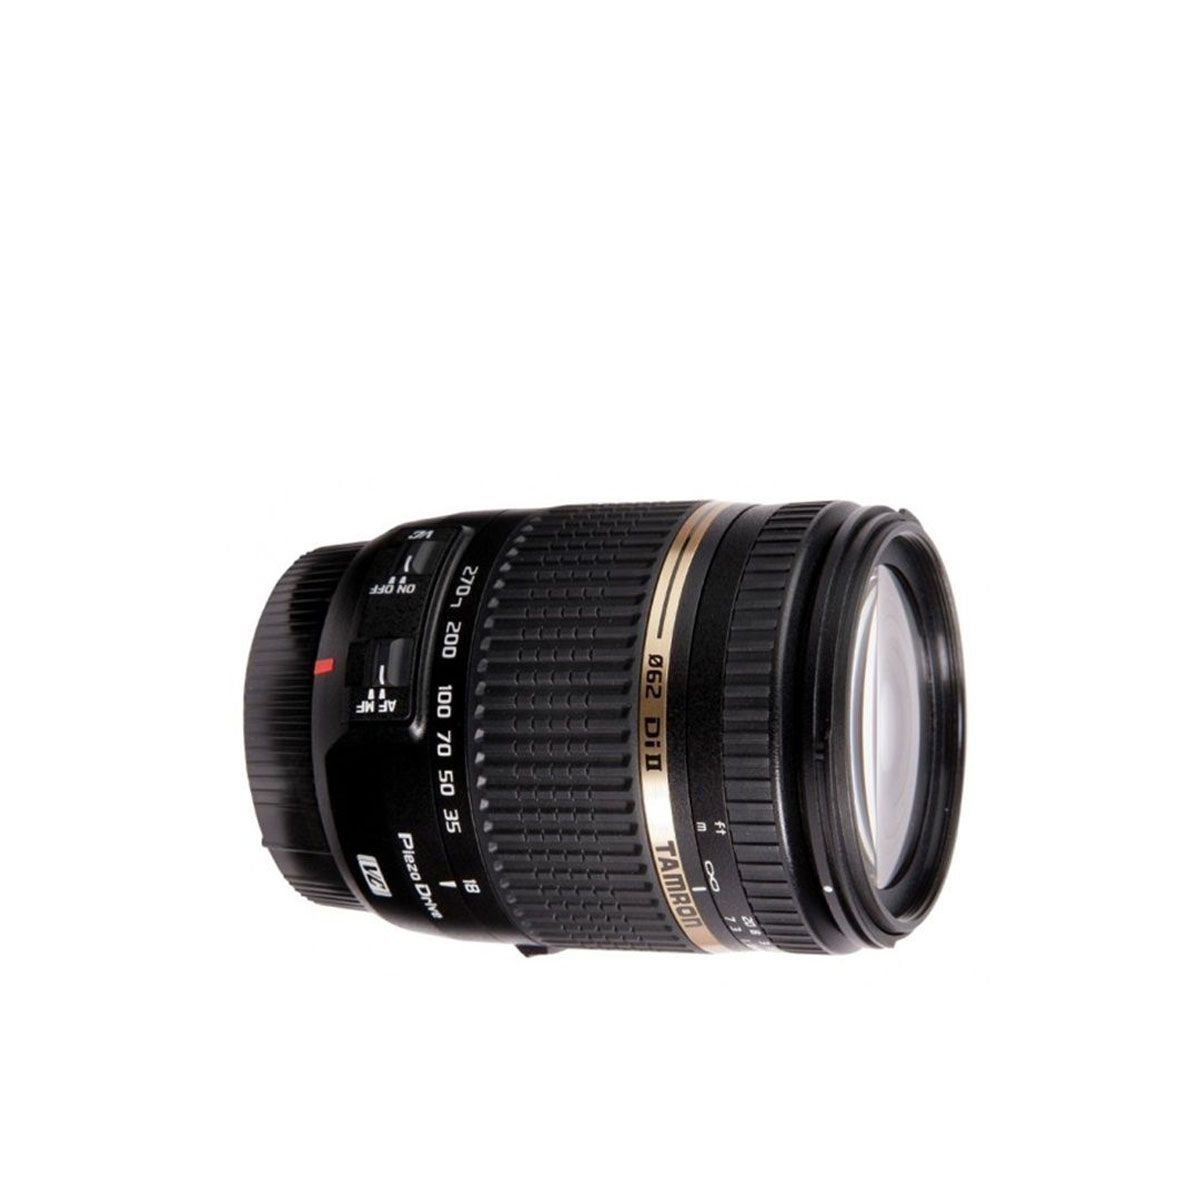  Ống kính Tamron 18-270mm f3.5-6.3 Di II VC for Nikon (2nd) 